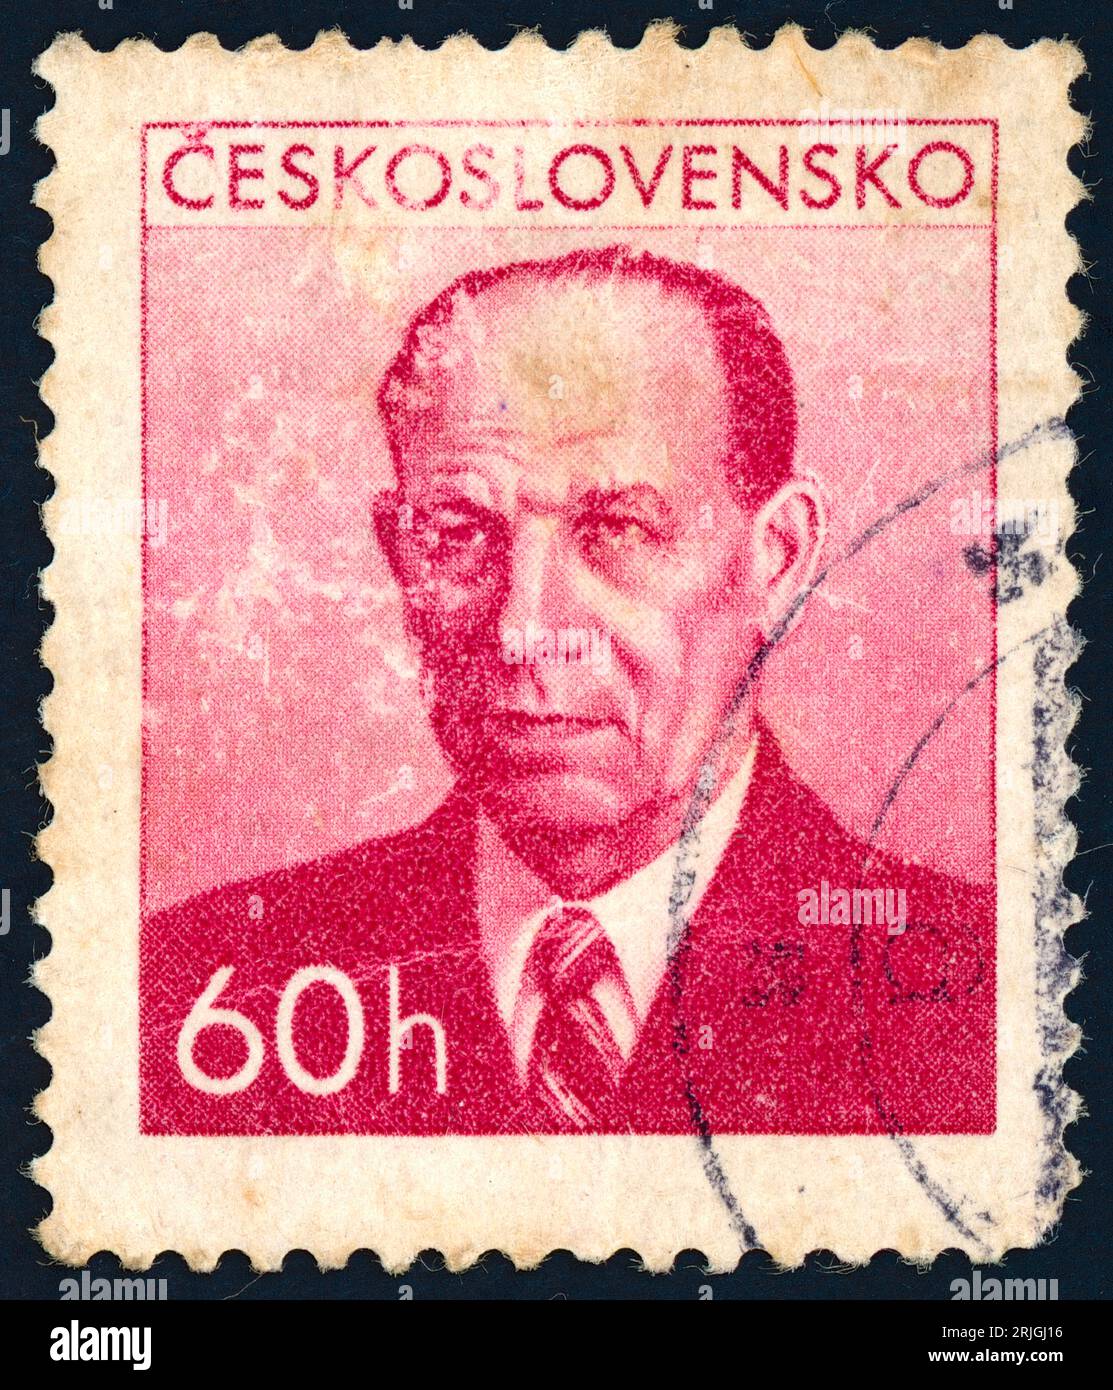 Antonín Zápotocký (1884 – 1957). Timbre-poste émis en Tchécoslovaquie en 1953. Antonín Zápotocký était un homme politique communiste tchèque et homme d'État qui a été Premier ministre de la Tchécoslovaquie de 1948 à 1953 et président de la Tchécoslovaquie de 1953 à 1957. Banque D'Images